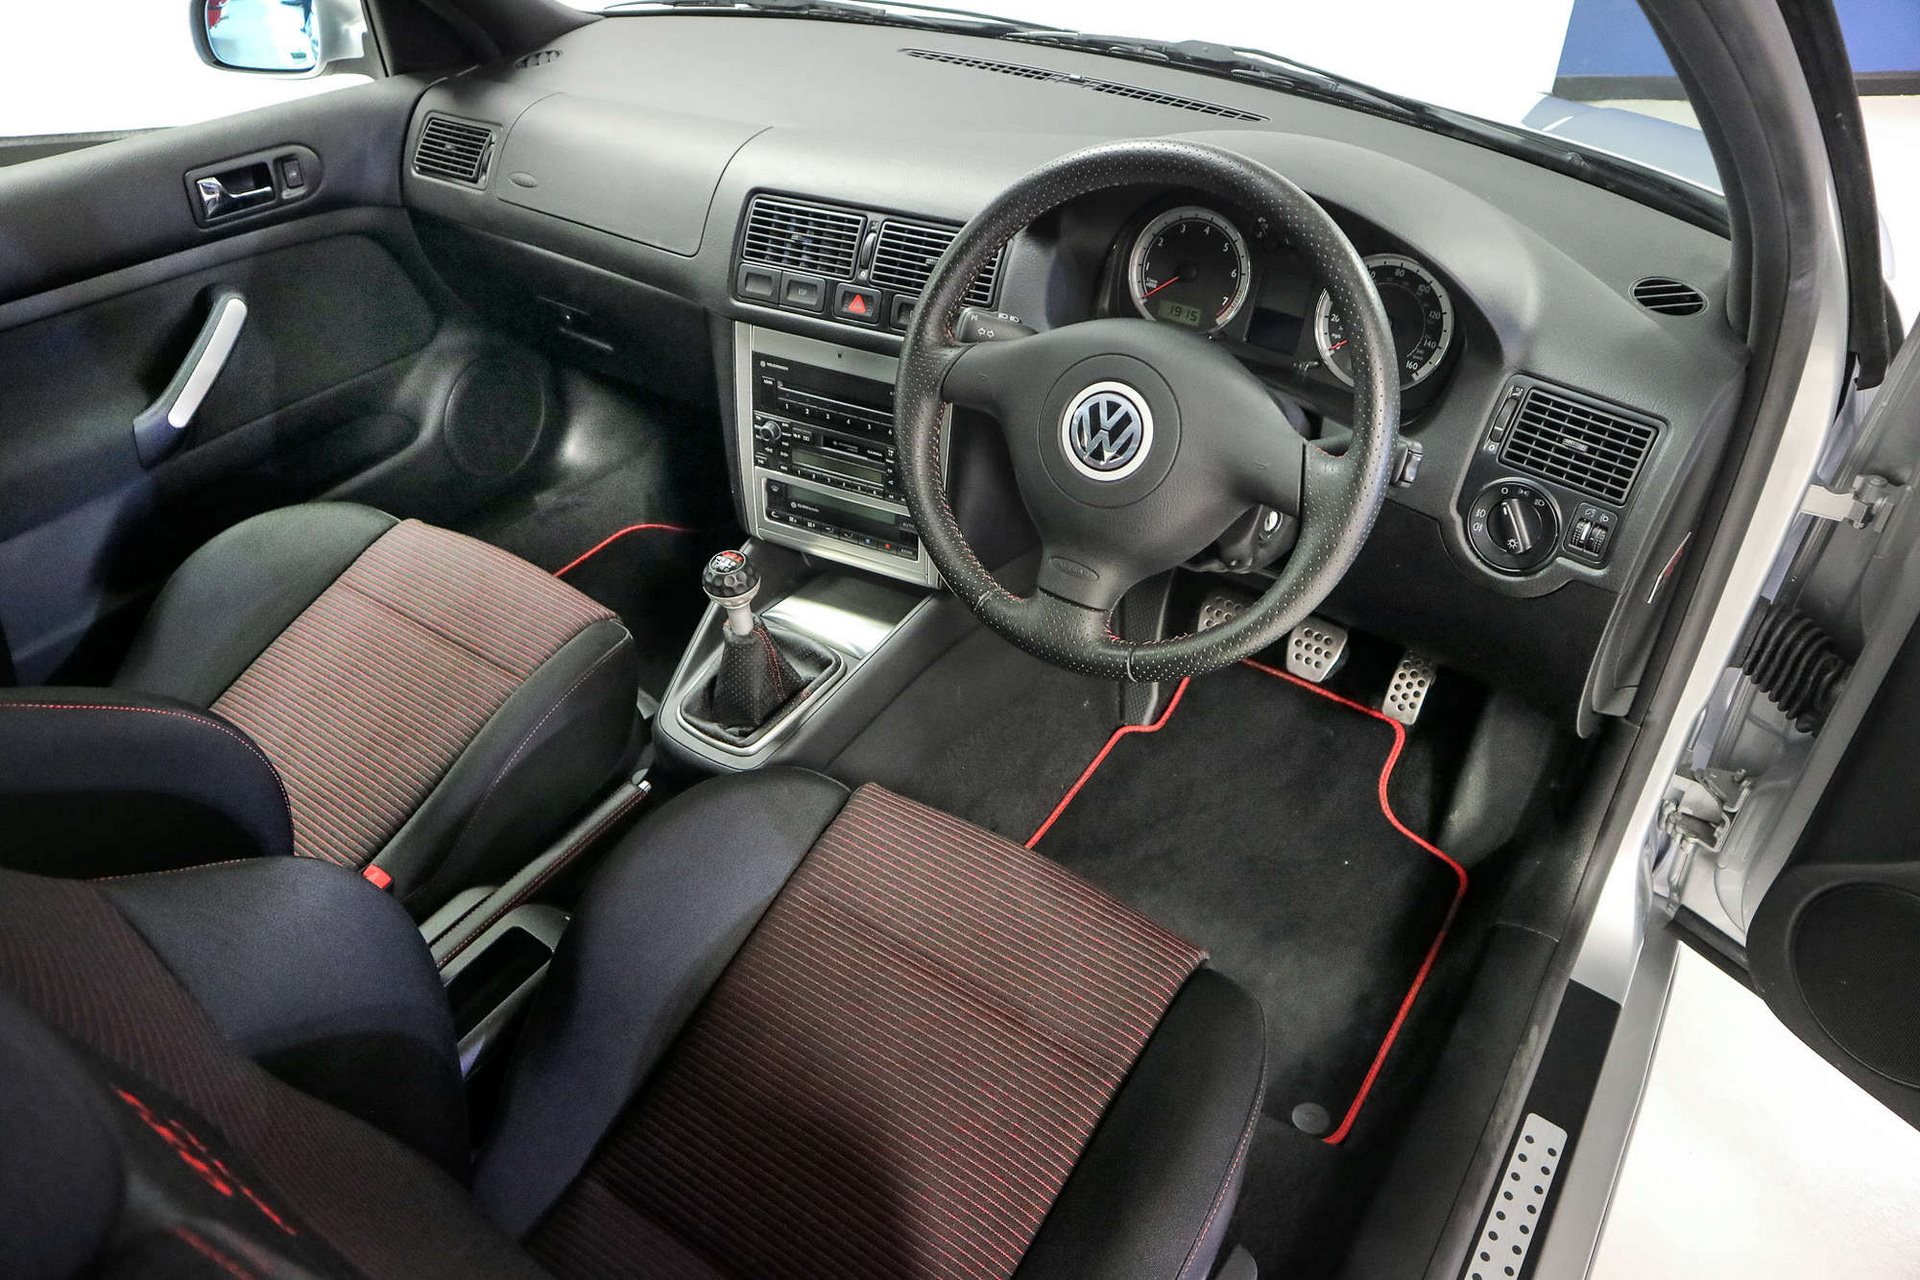 Nieużywany VW Golf IV GTI 25th na aukcji. Ma tylko 13 km